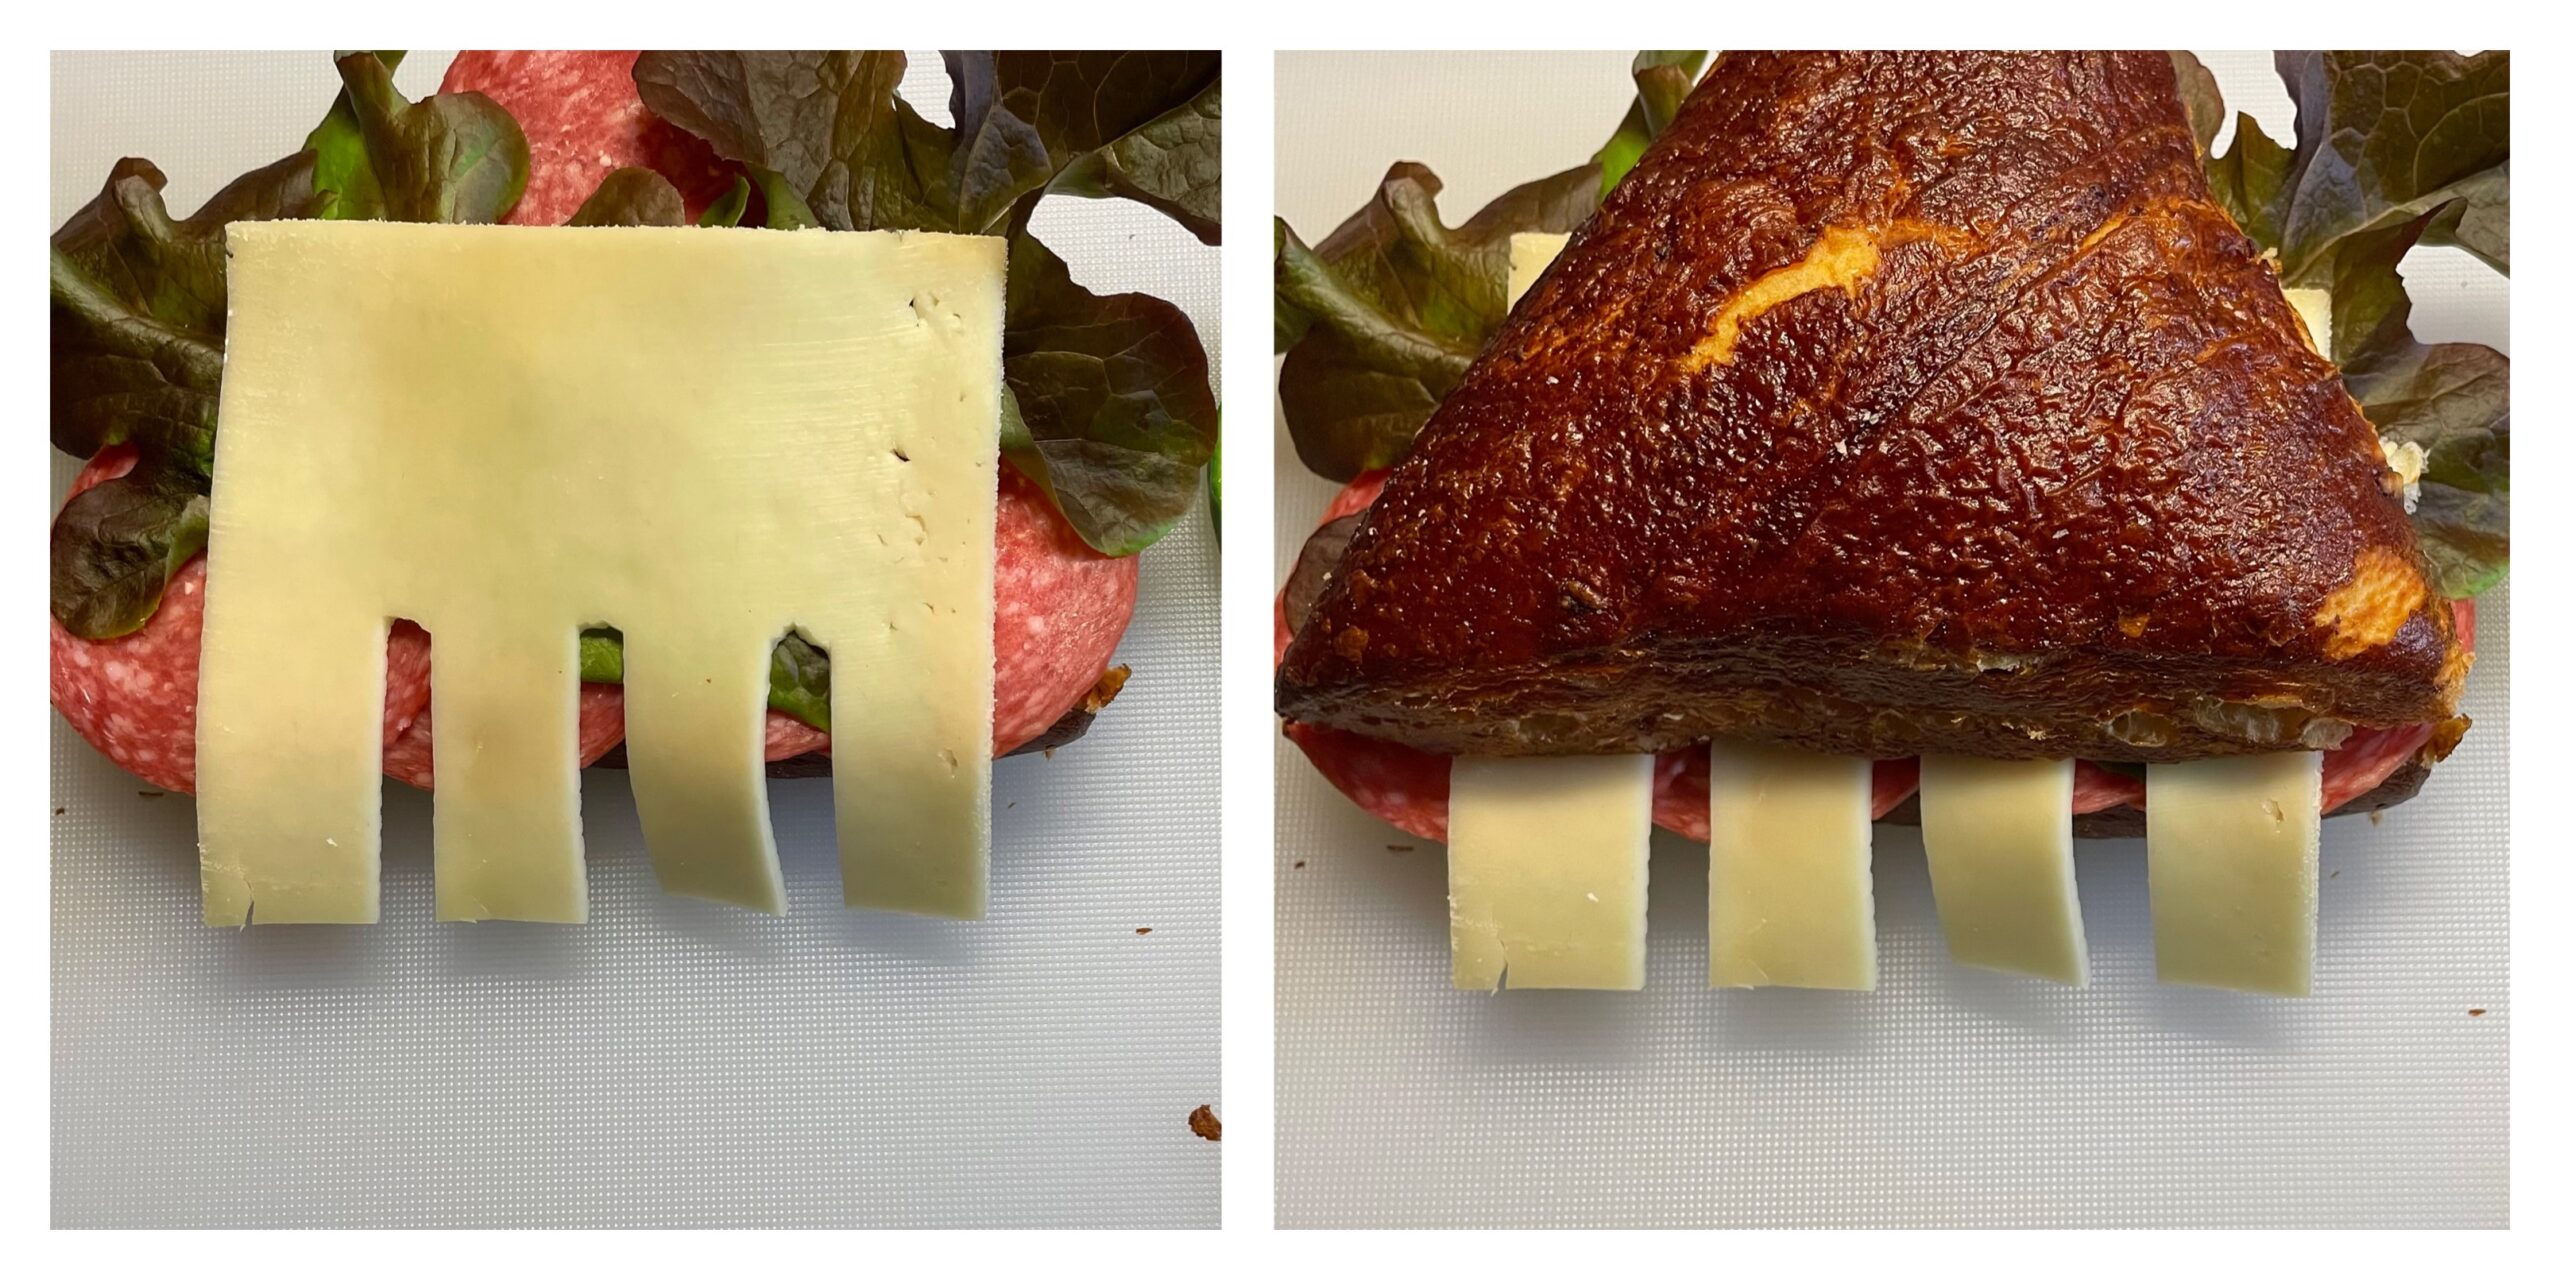 Bild zum Schritt 8 für das Bastel- und DIY-Abenteuer für Kinder: 'Jetzt legt ihr die Käse-Zähne so auf das Brötchen, dass...'